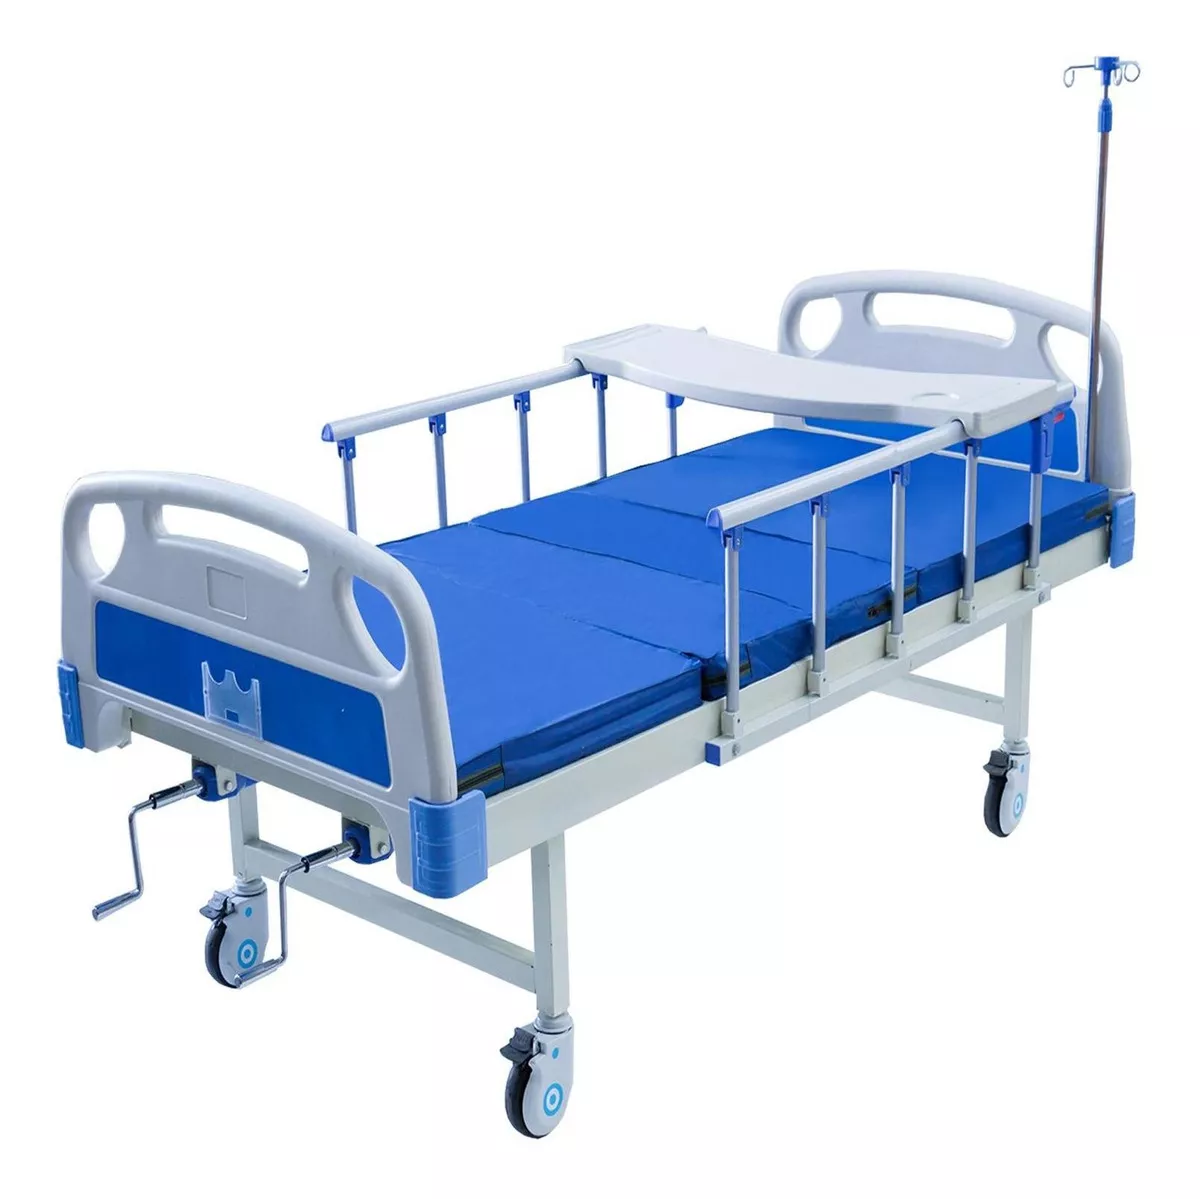 Segunda imagen para búsqueda de cama de hospital precio